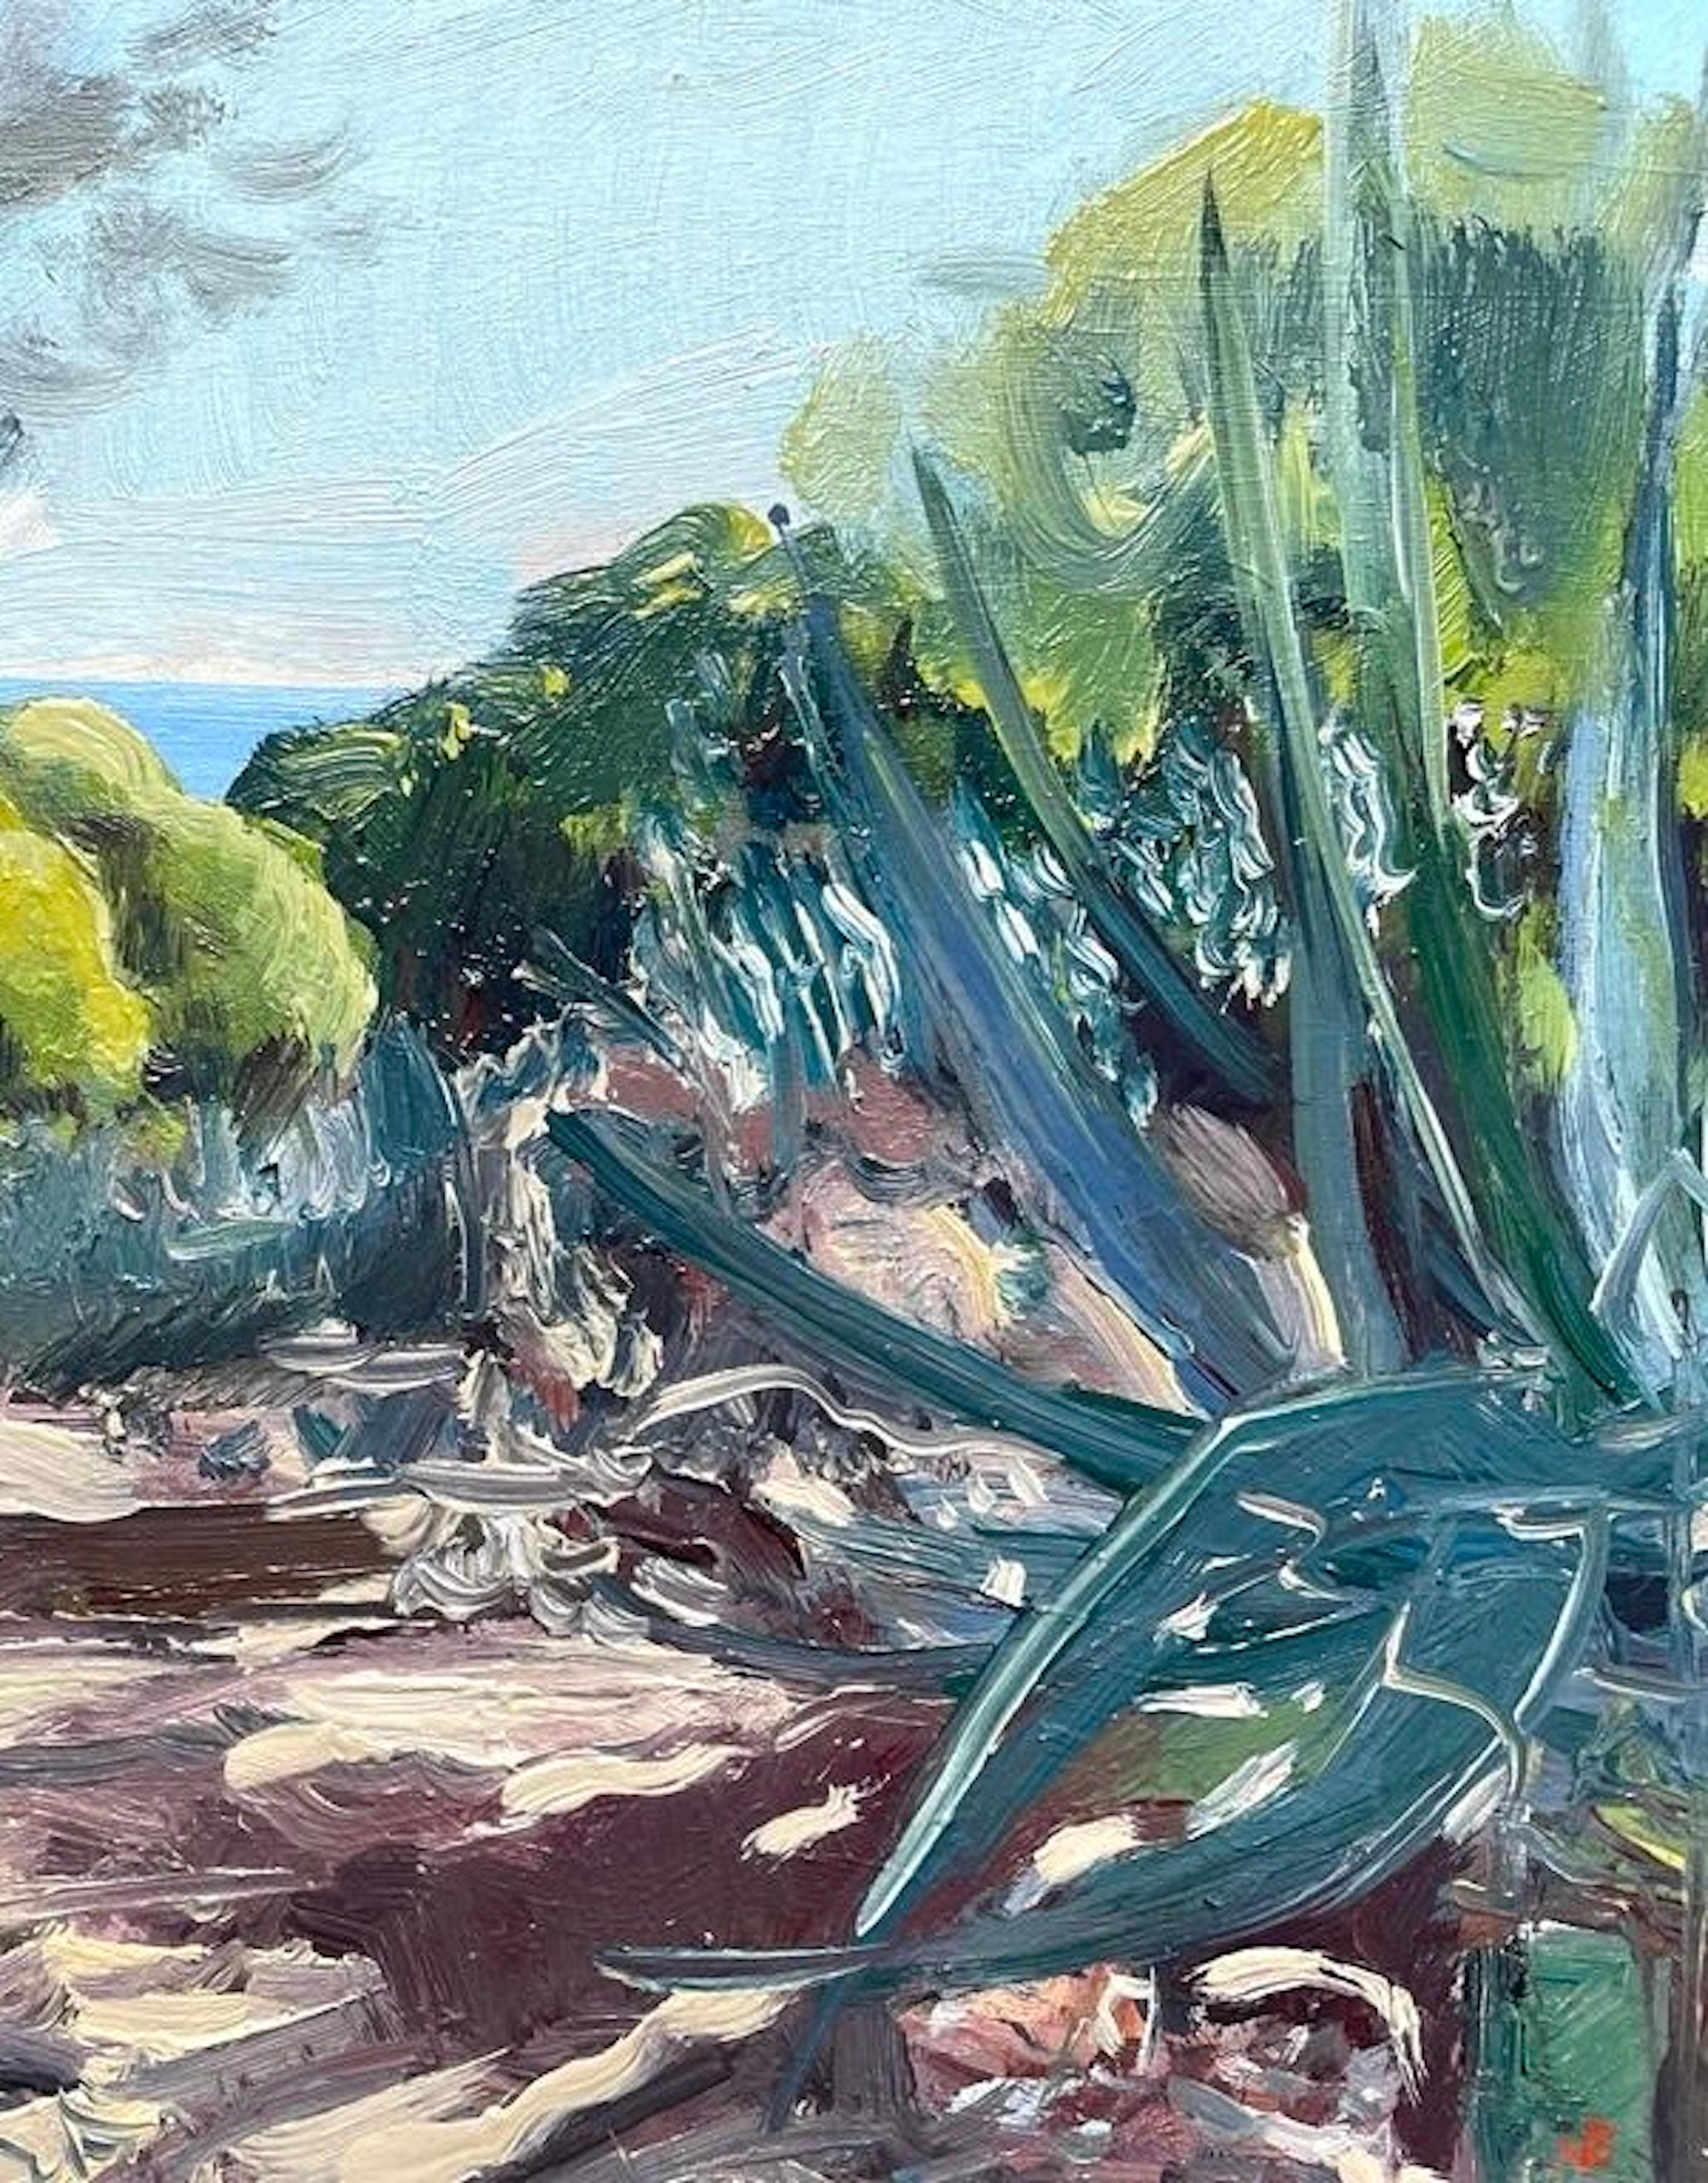 Portuguese Cactus, Plant, Landscape, Seascape, Nature, Impressionist - Painting by Natalie Bird